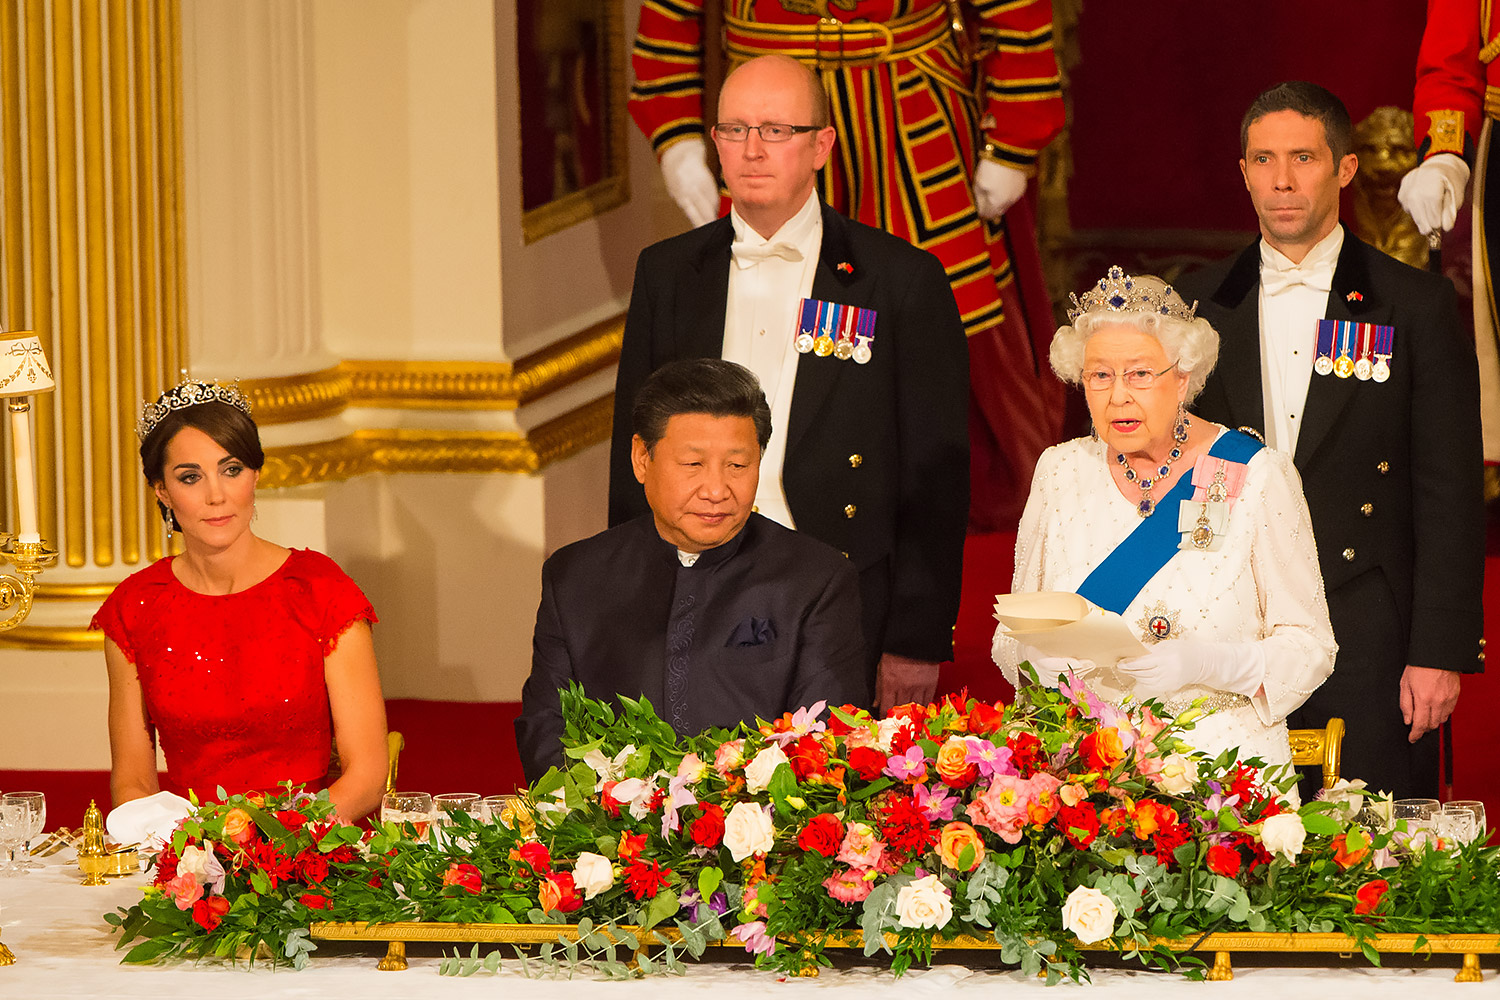 Ослабленная Британия может попасть под власть Китая, считает колумнист Times